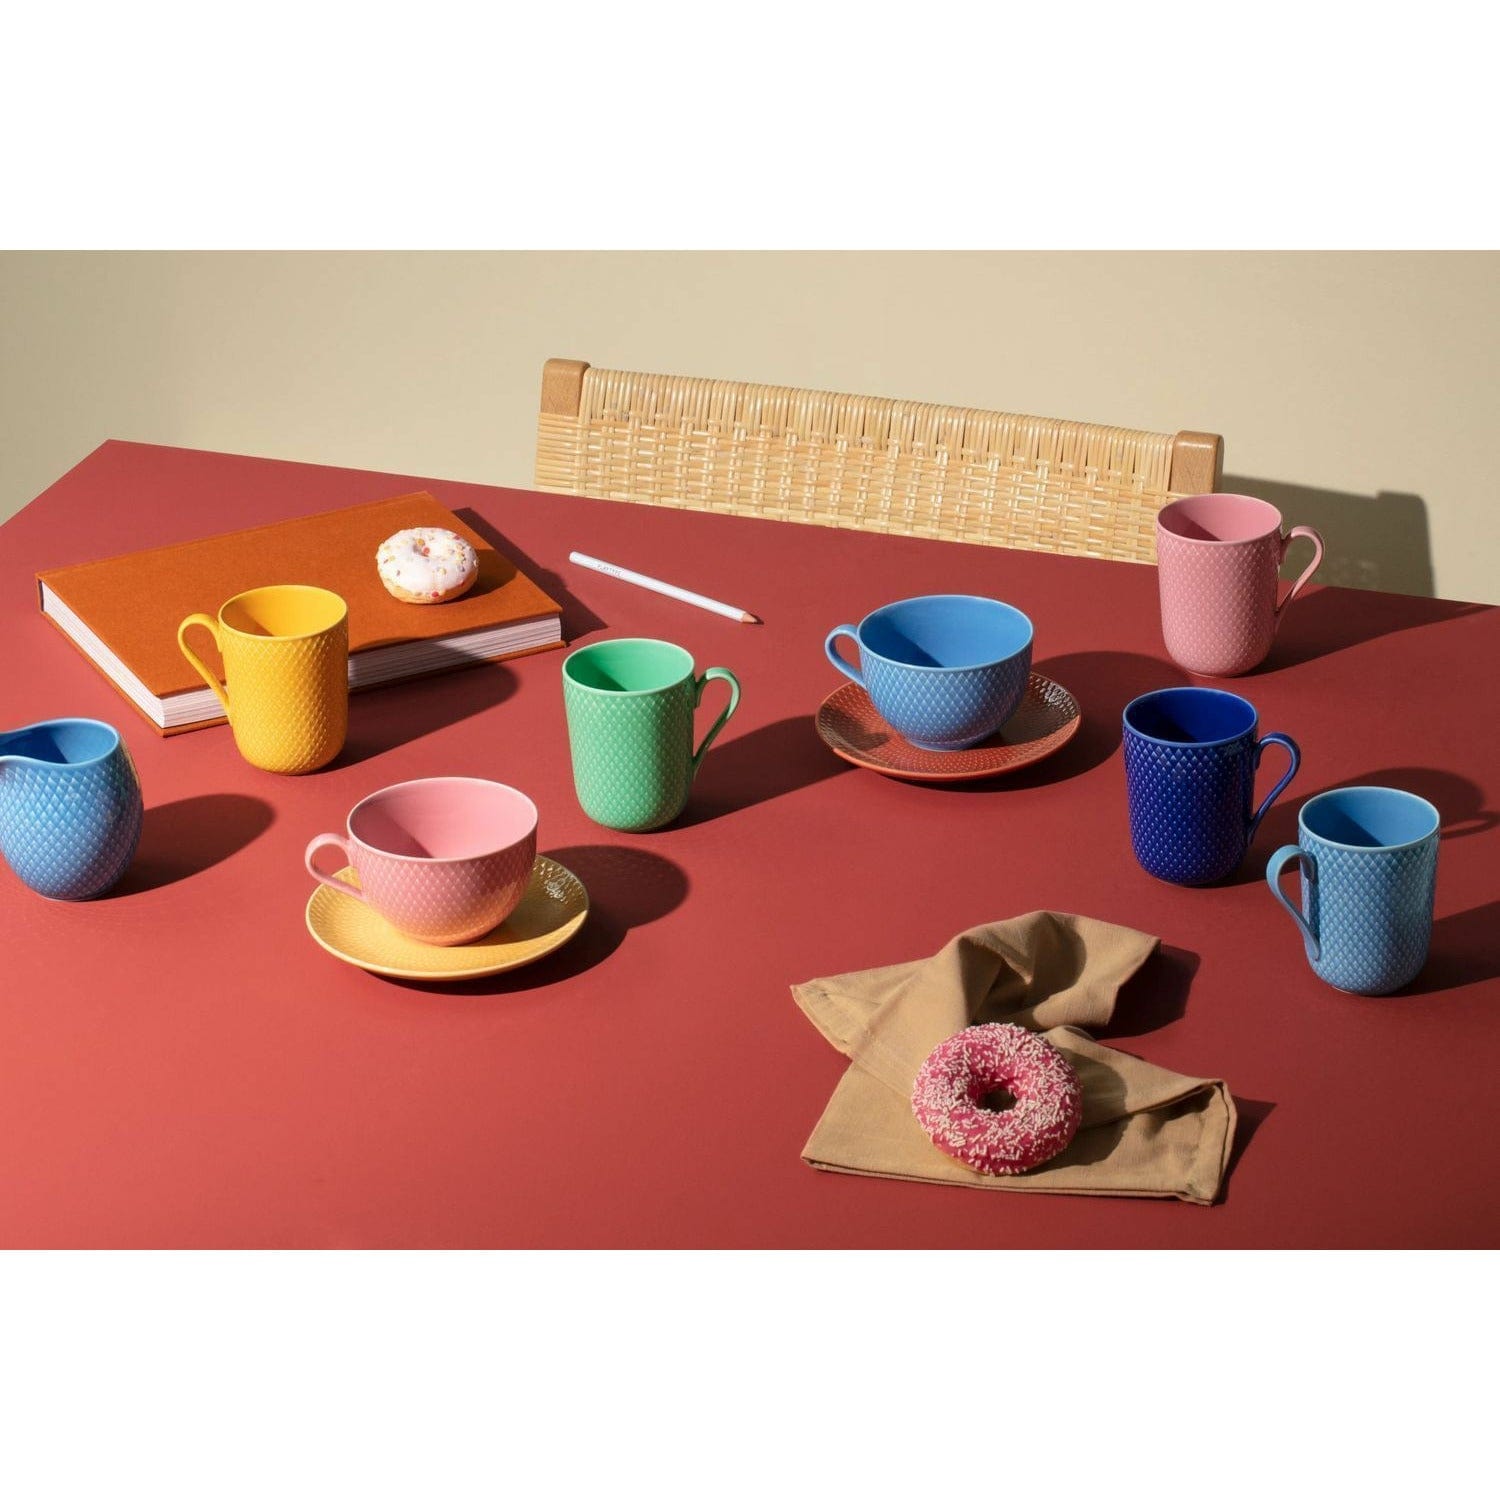 Lyngby Porcelæn Rhombe Color Tea Cup lautanen, vaaleanpunainen/beige